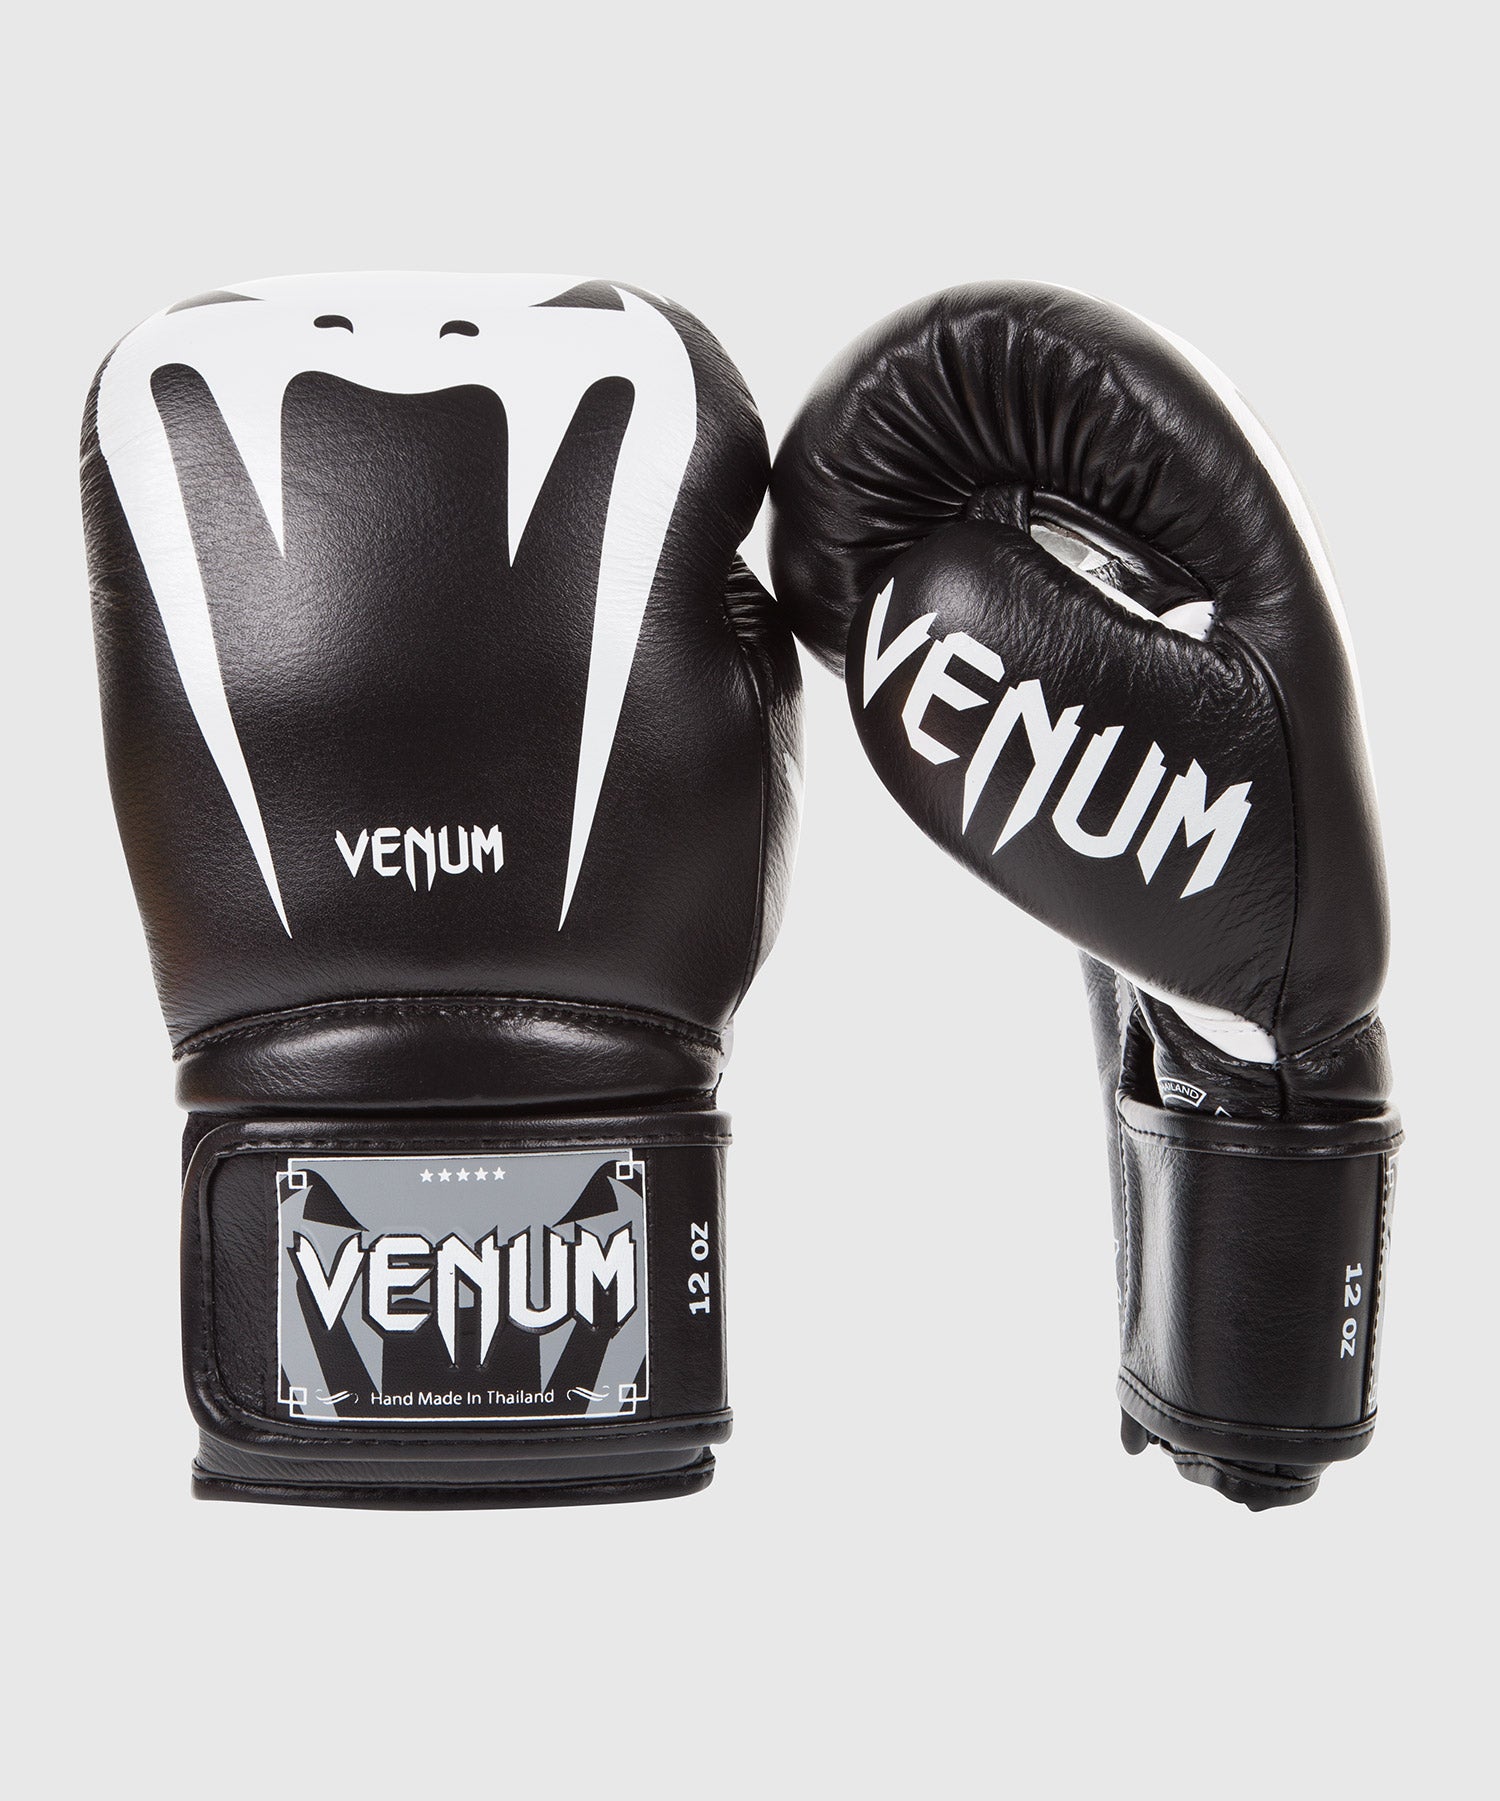 Gants de boxe Venum Giant 3.0 – Venum France